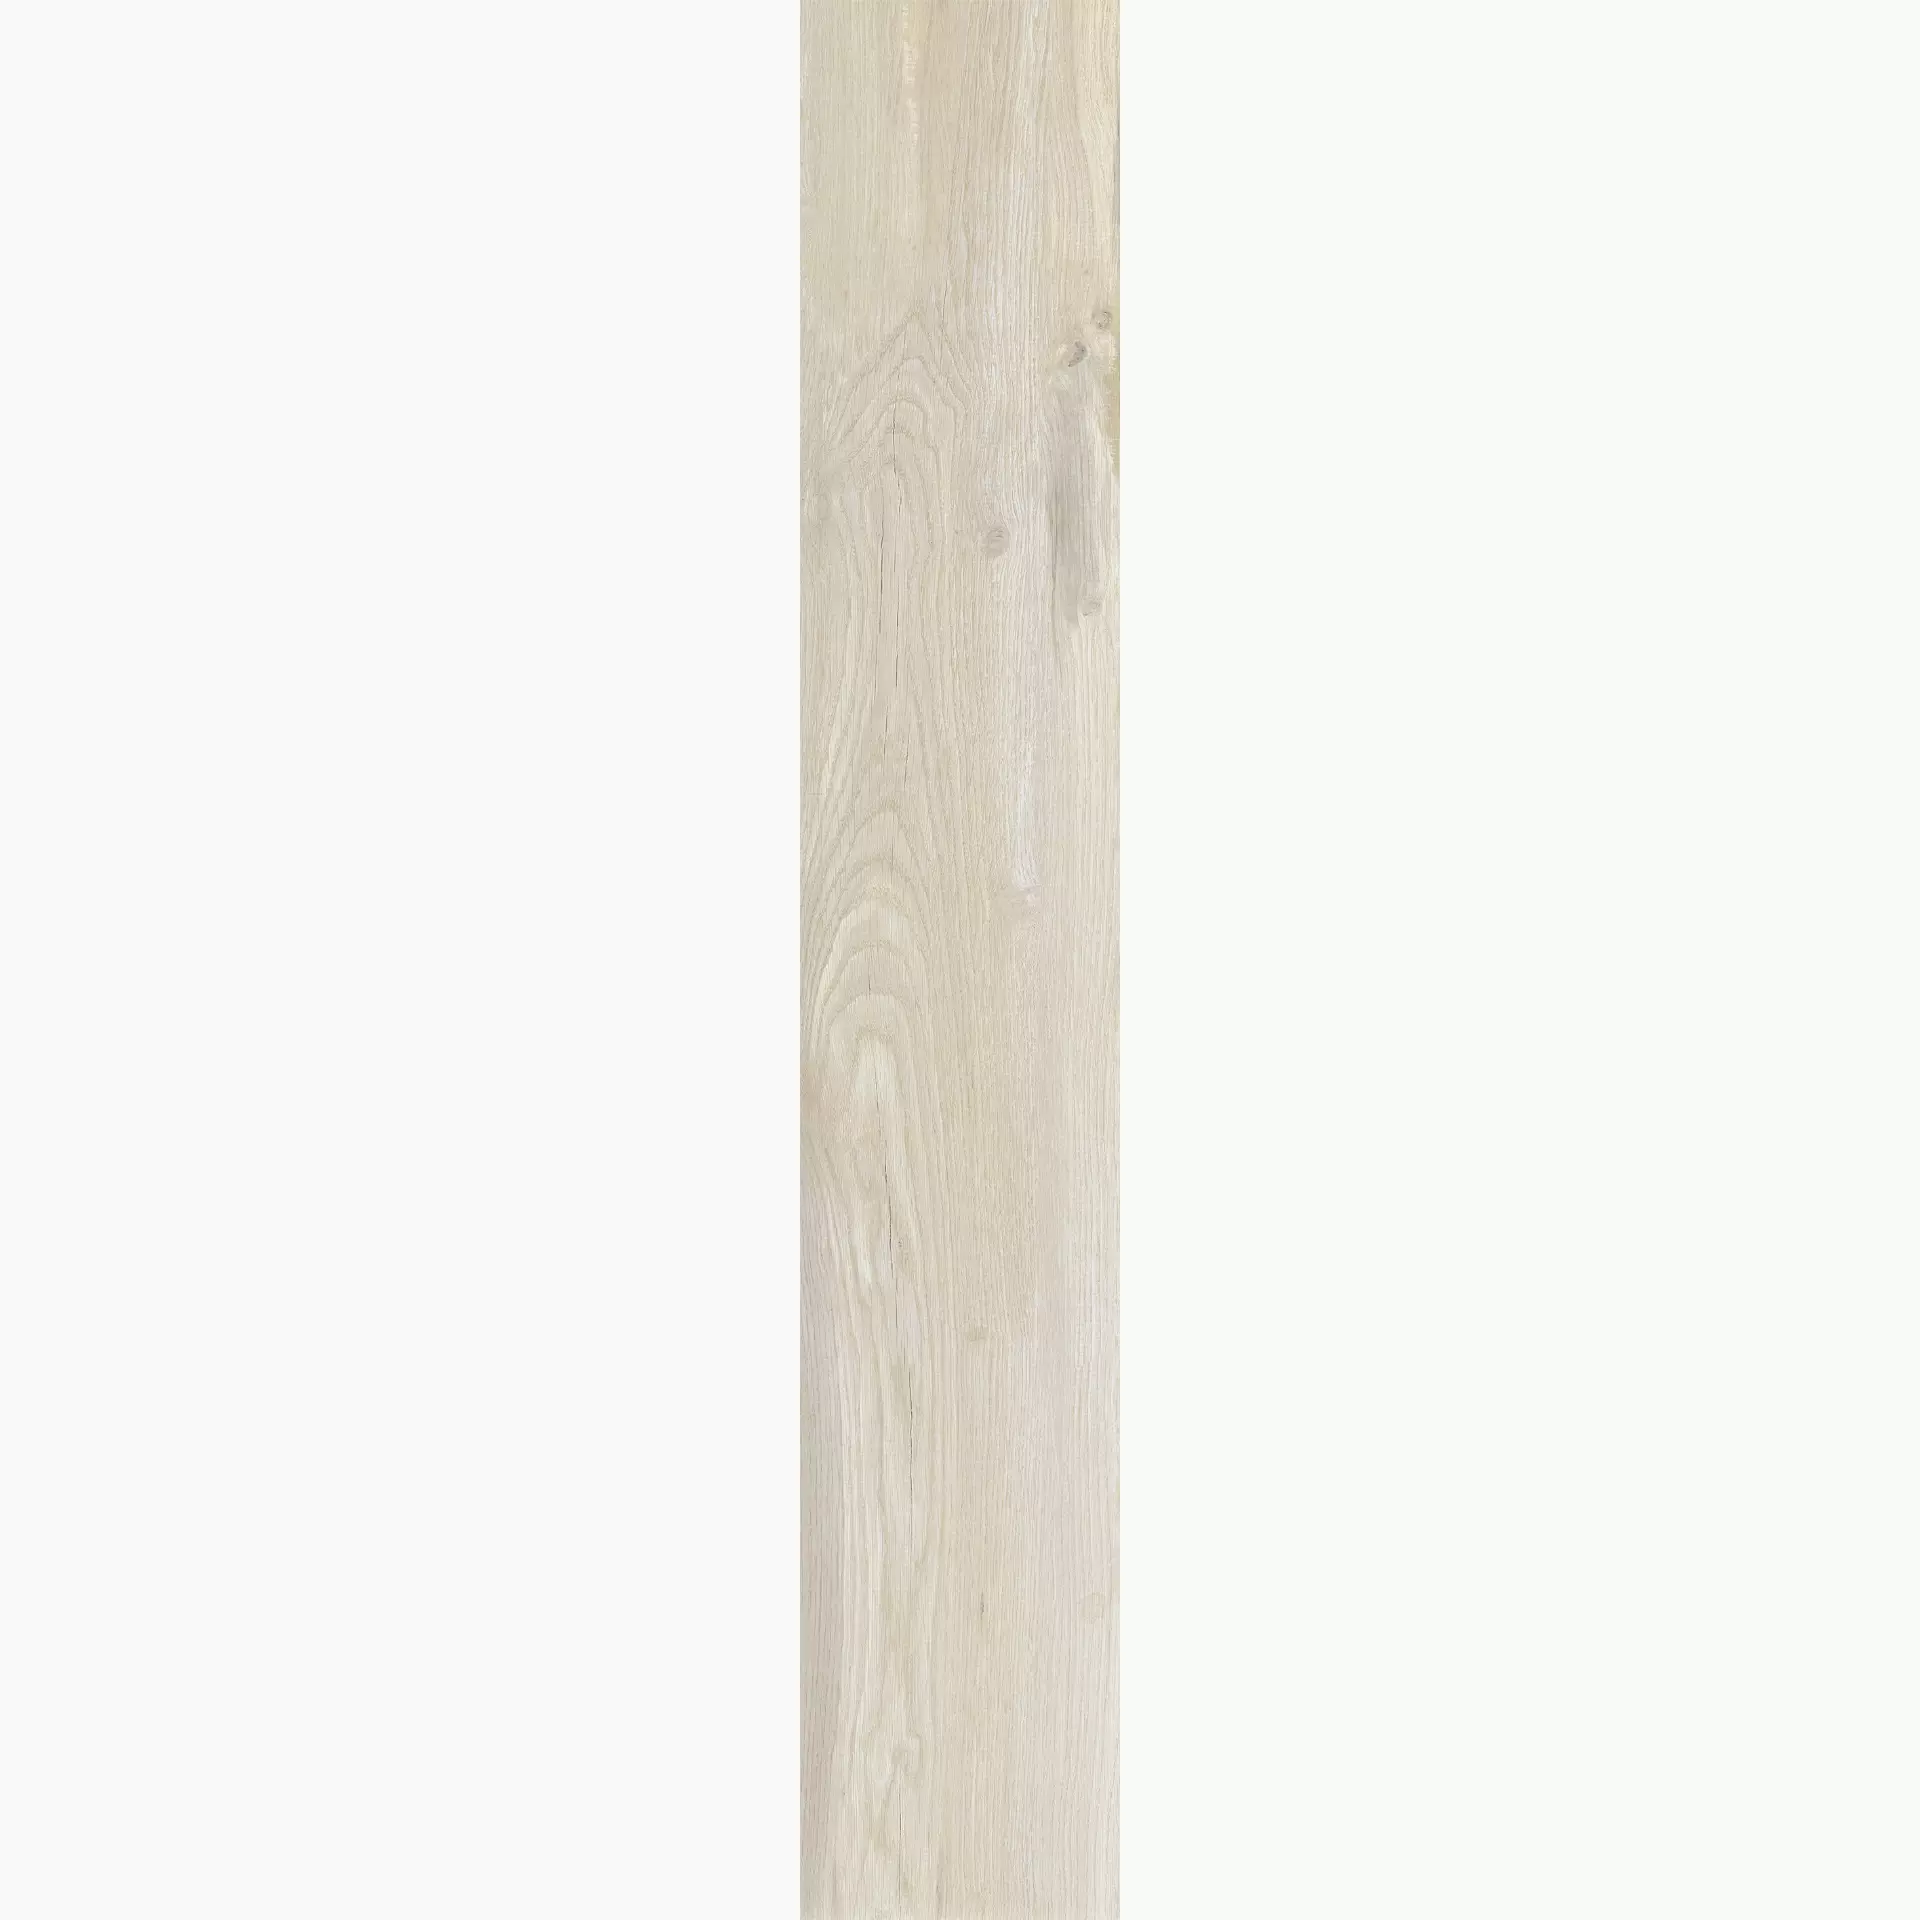 Florim Hi-Wood Of Cerim Almond Naturale – Matt Almond 759961 matt natur 20x120cm rektifiziert 9mm